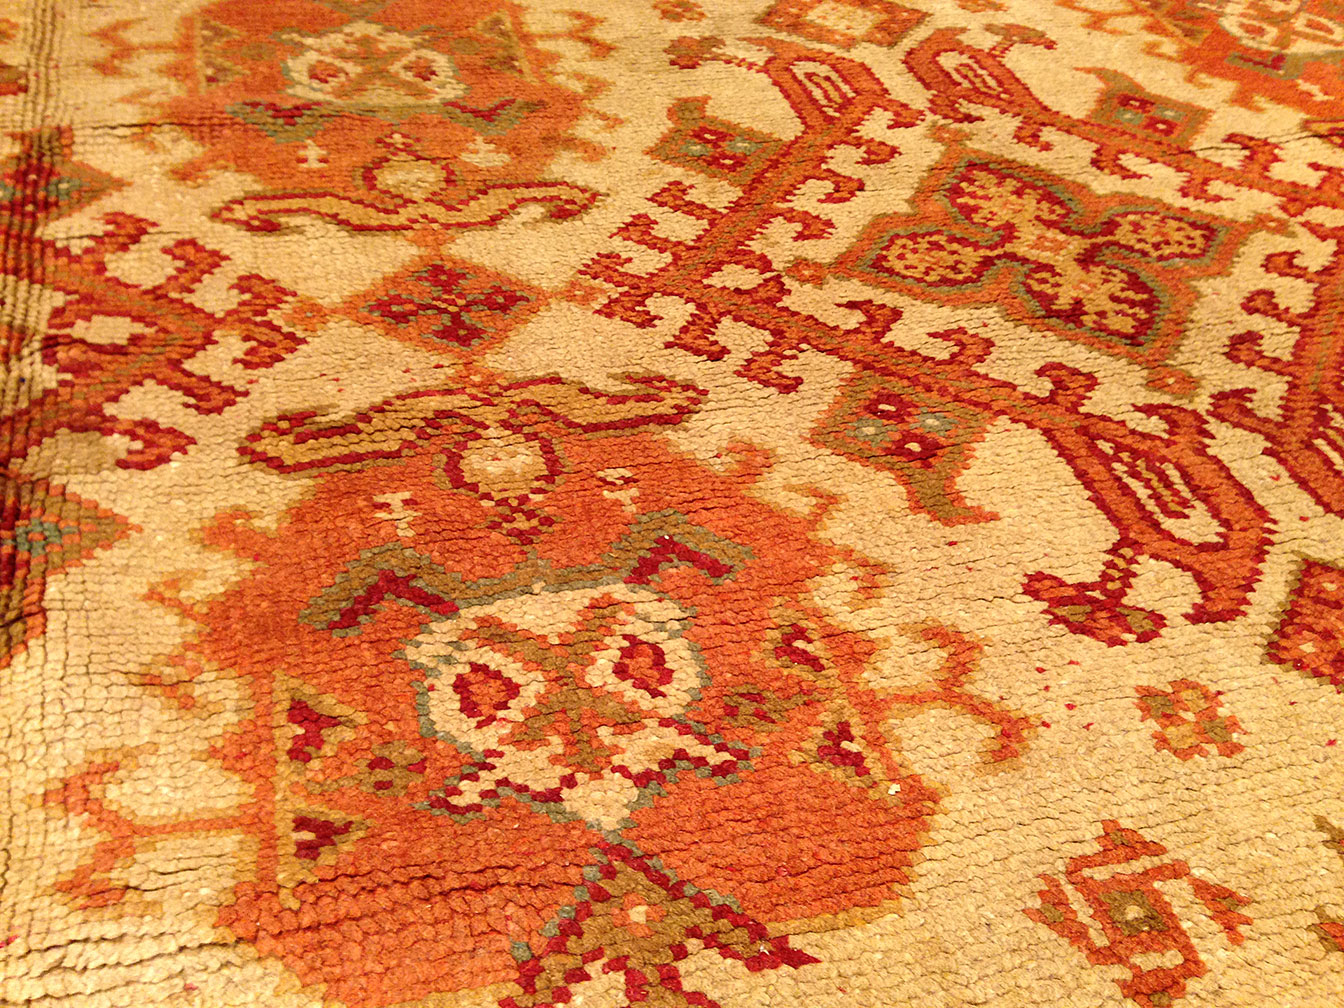 Antique donegal Carpet - # 9147